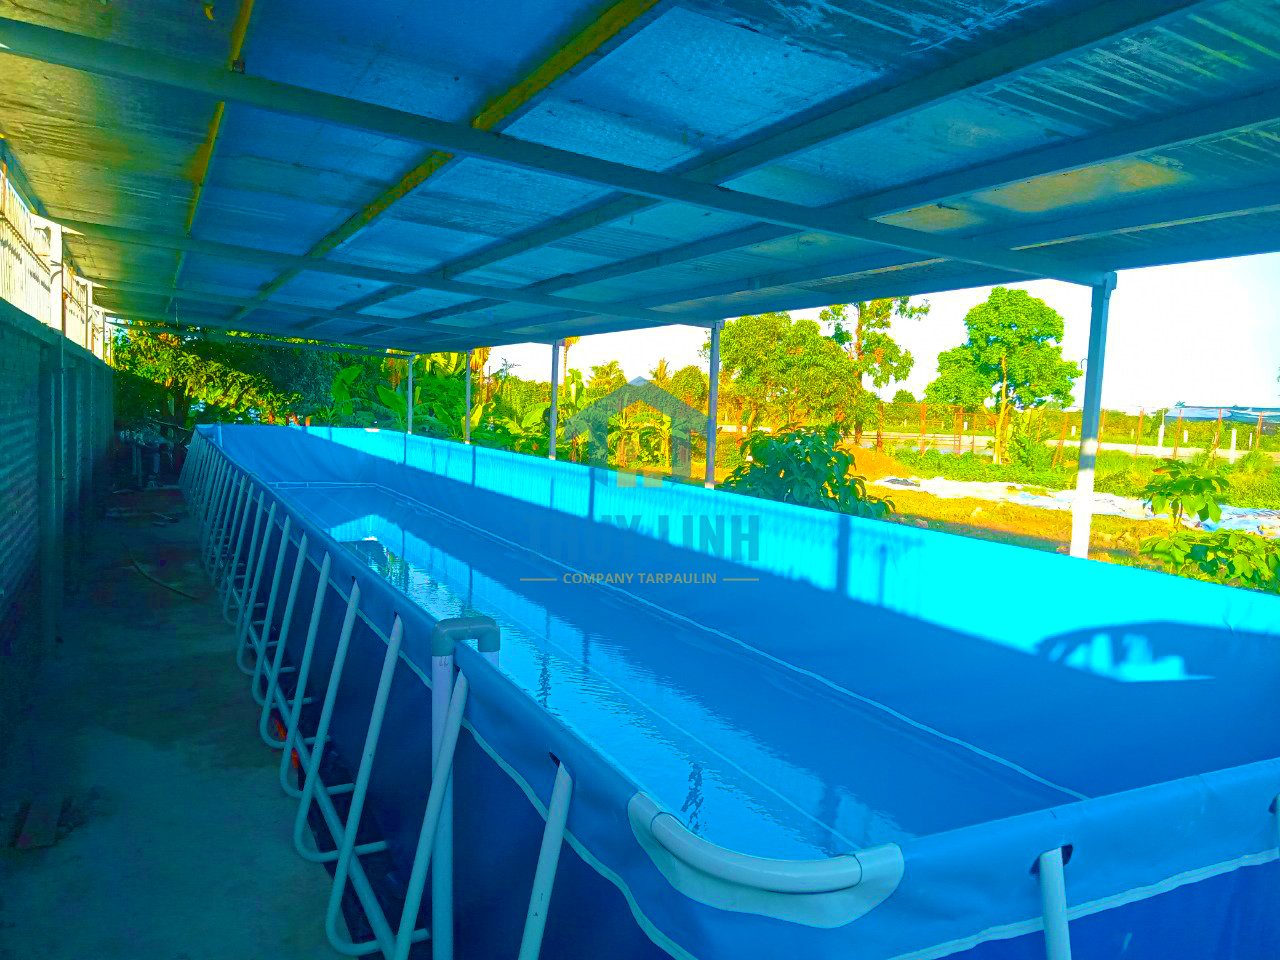 Bàn giao 5 bể bơi lắp ghép cho các trường học tại Di Linh, Lâm Đồng 1